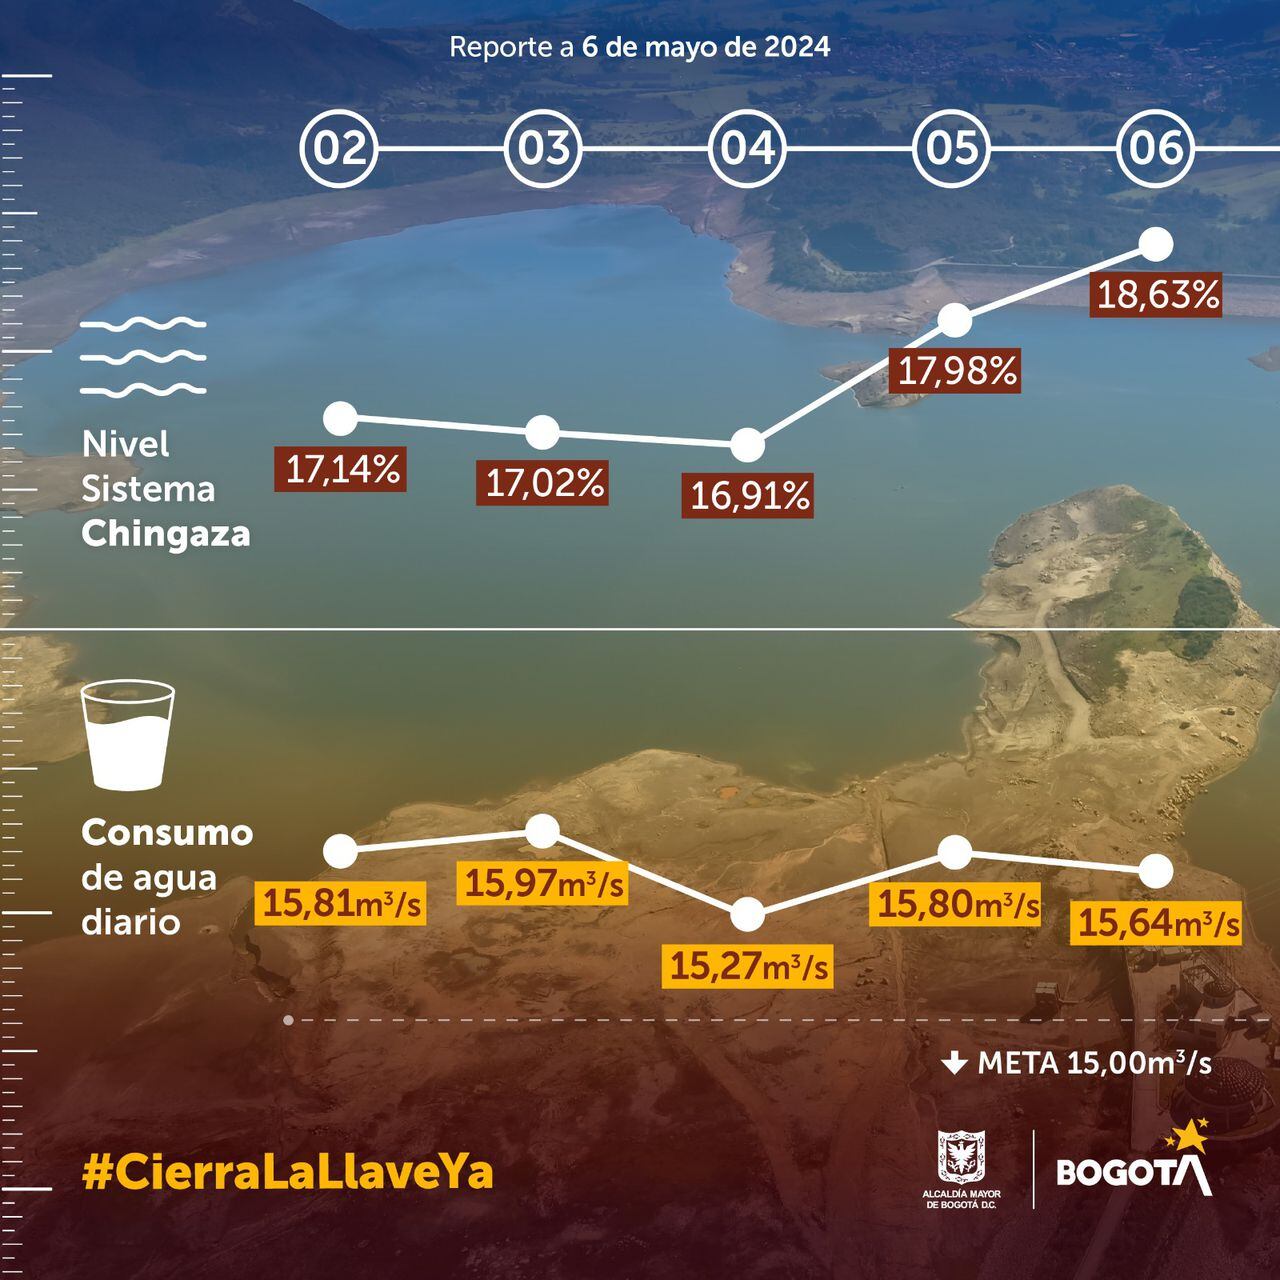 Reporte del nivel del sistema Chingaza, que suministra el agua al 70 % de Bogotá, a corte del 6 de mayo de 2024.